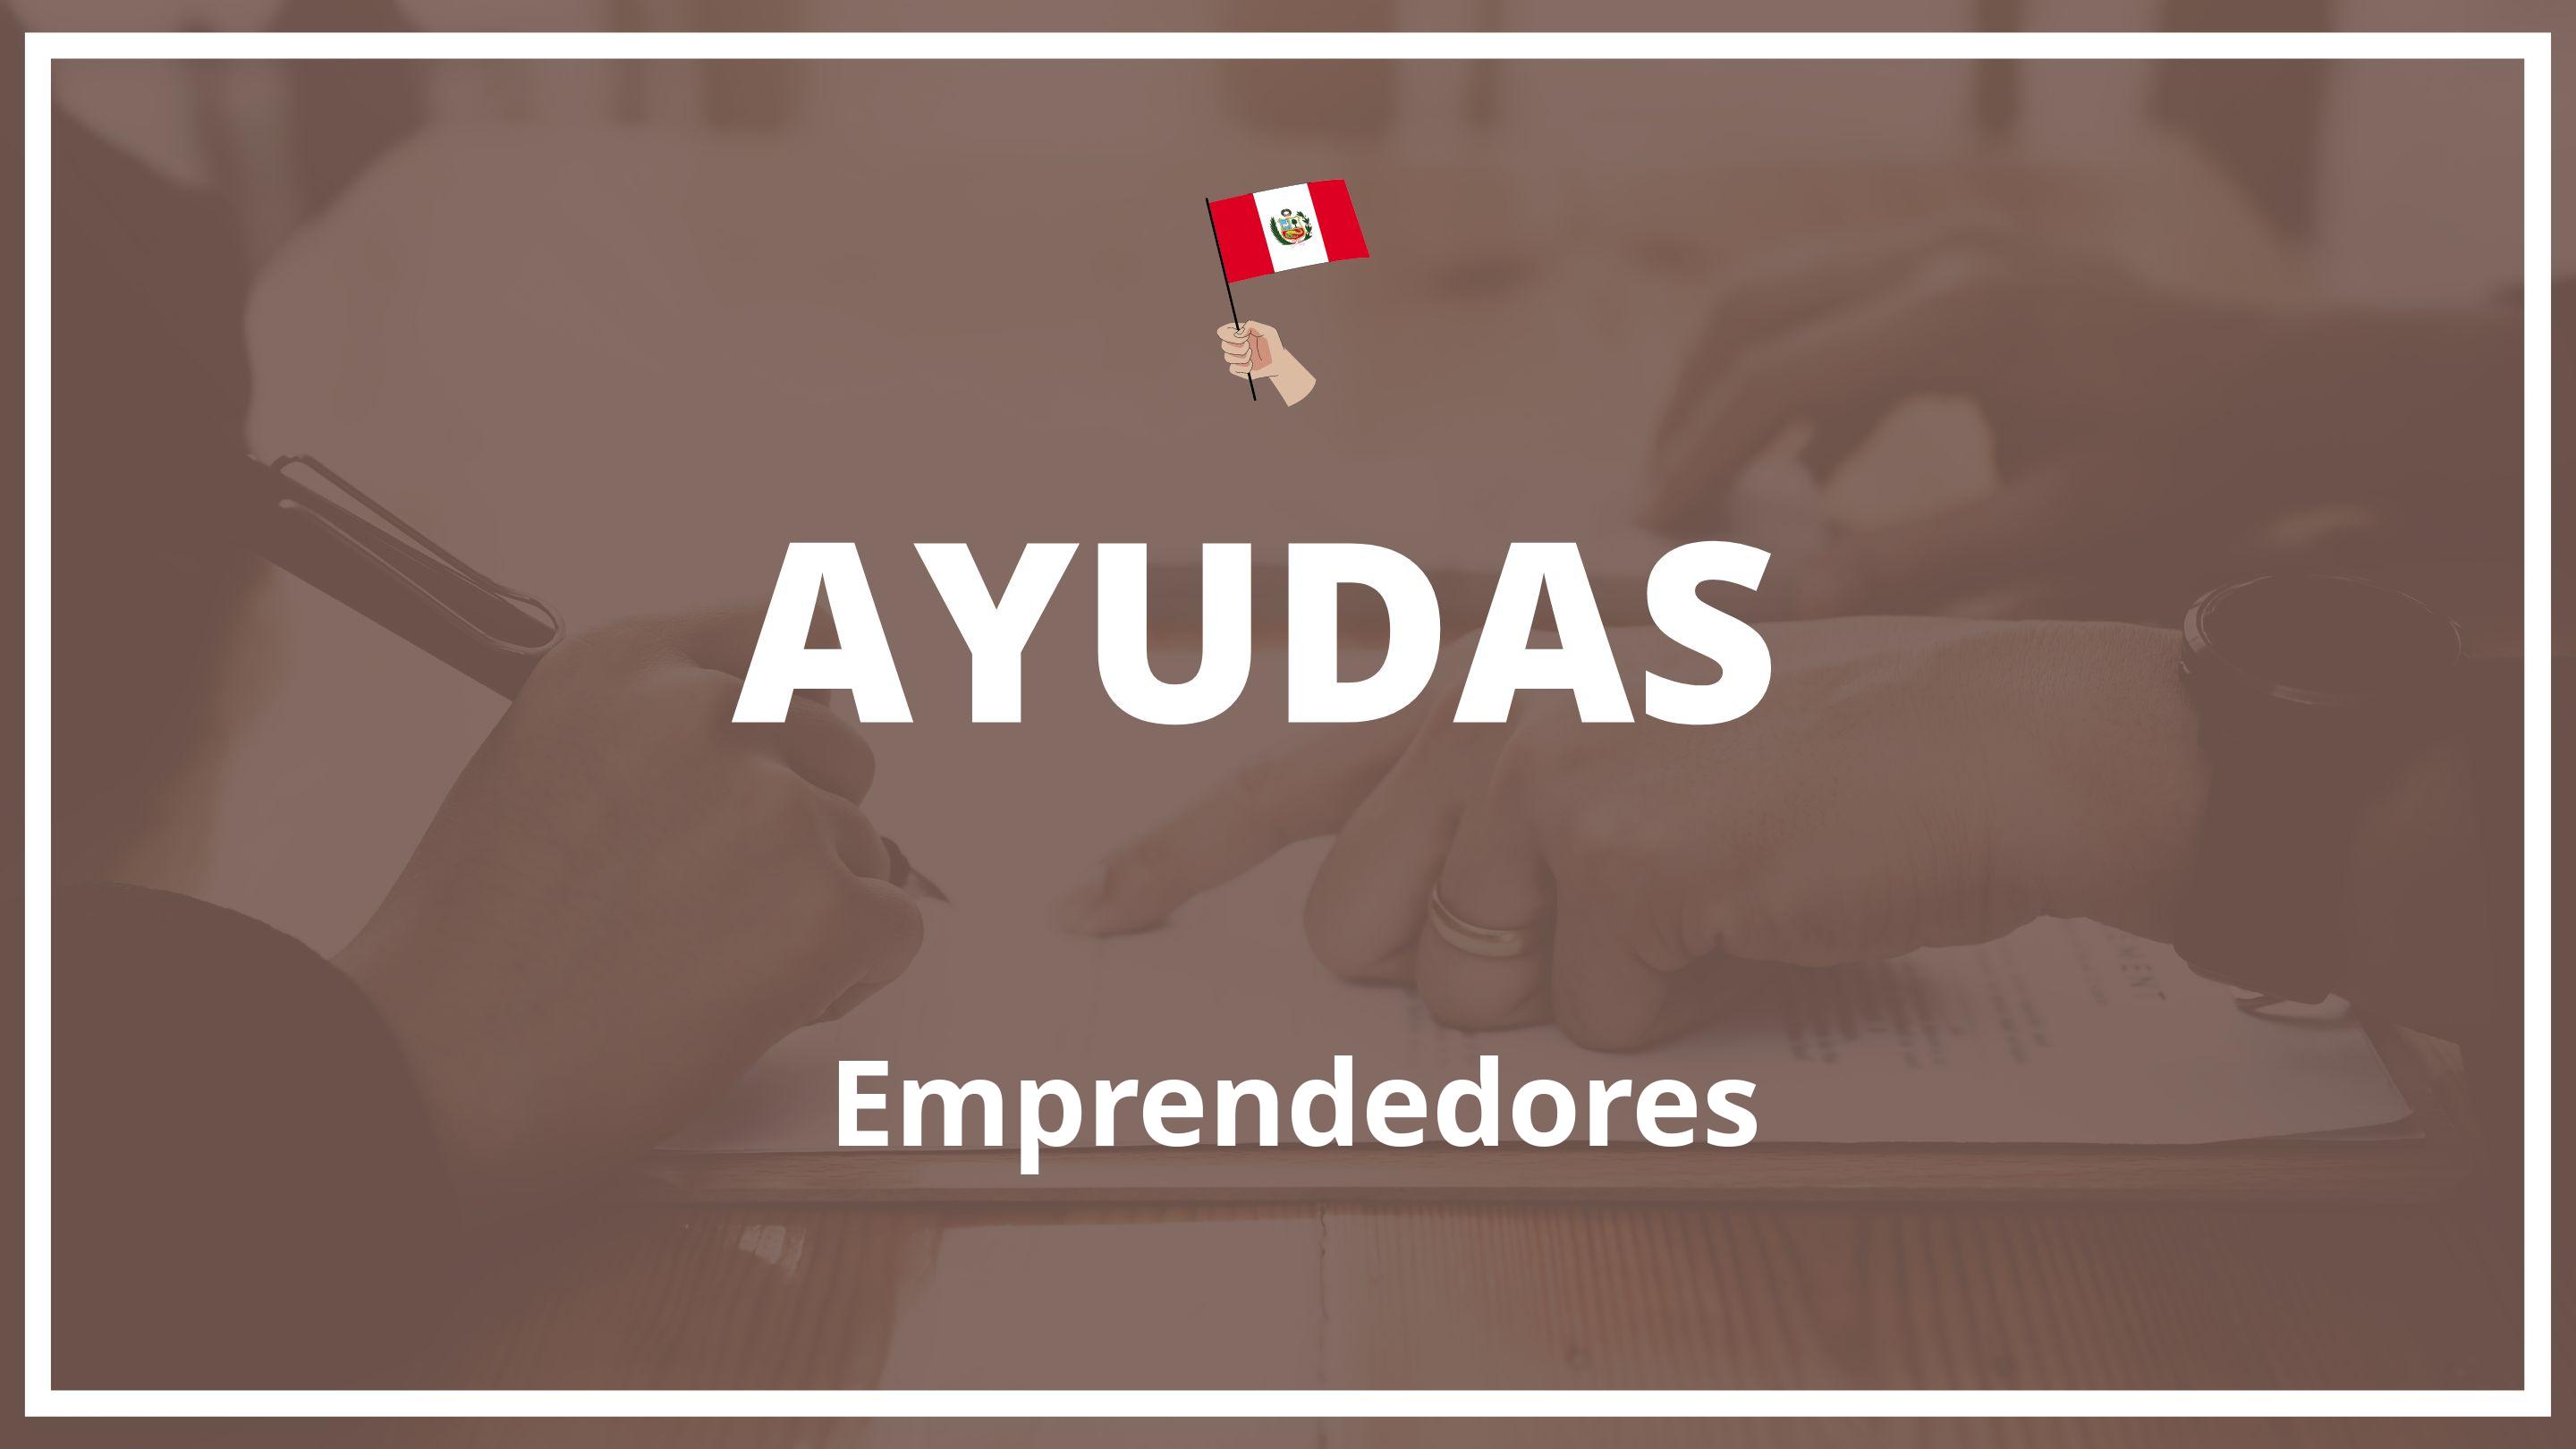 Ayudas para emprendedores Peru